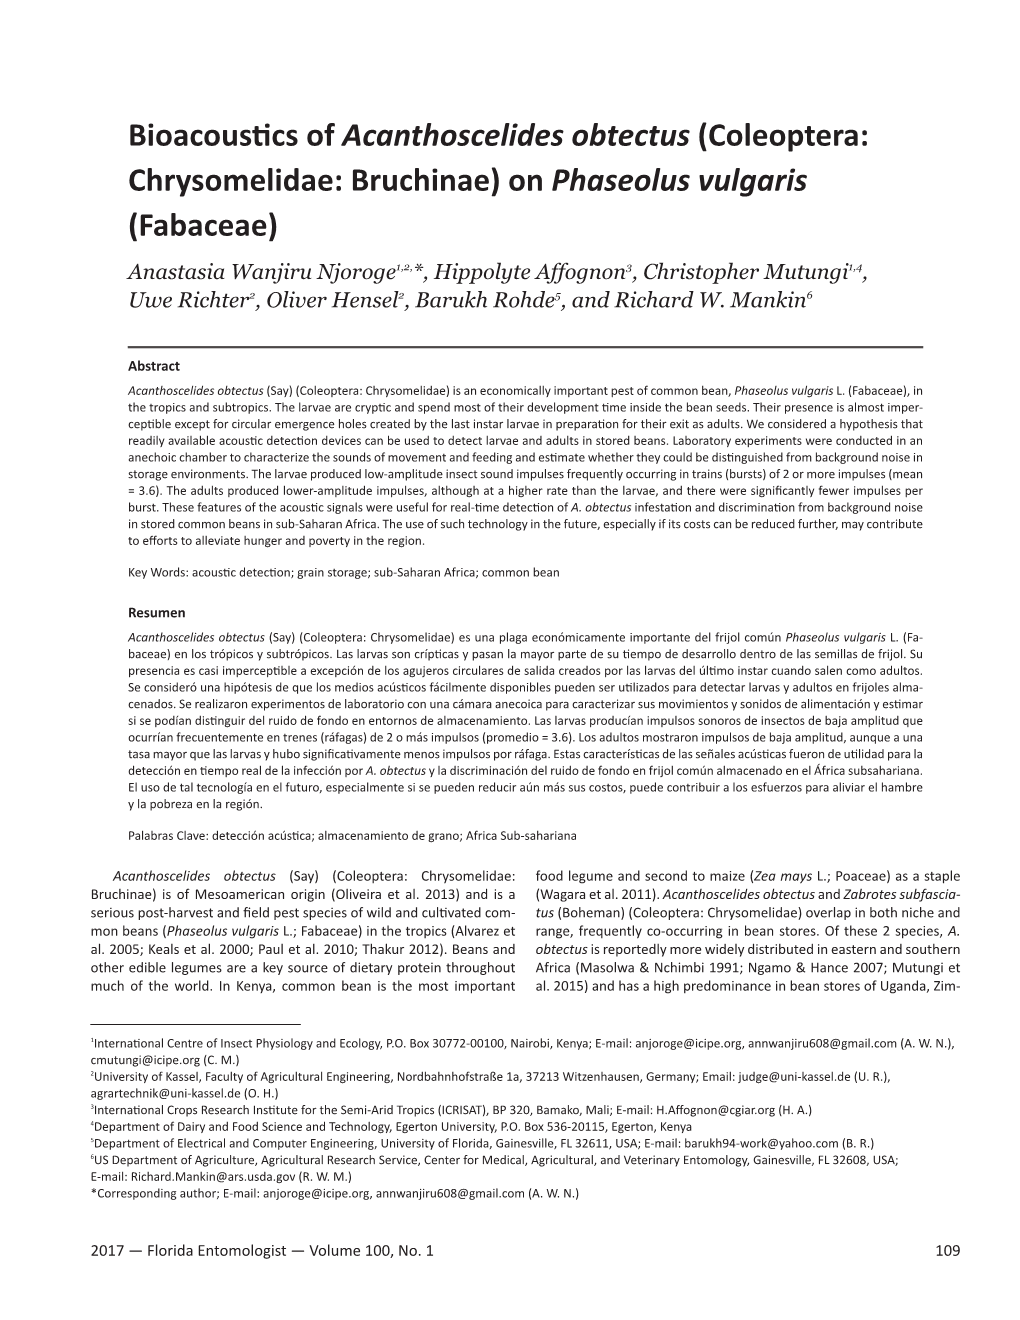 Bioacoustics of Acanthoscelides Obtectus